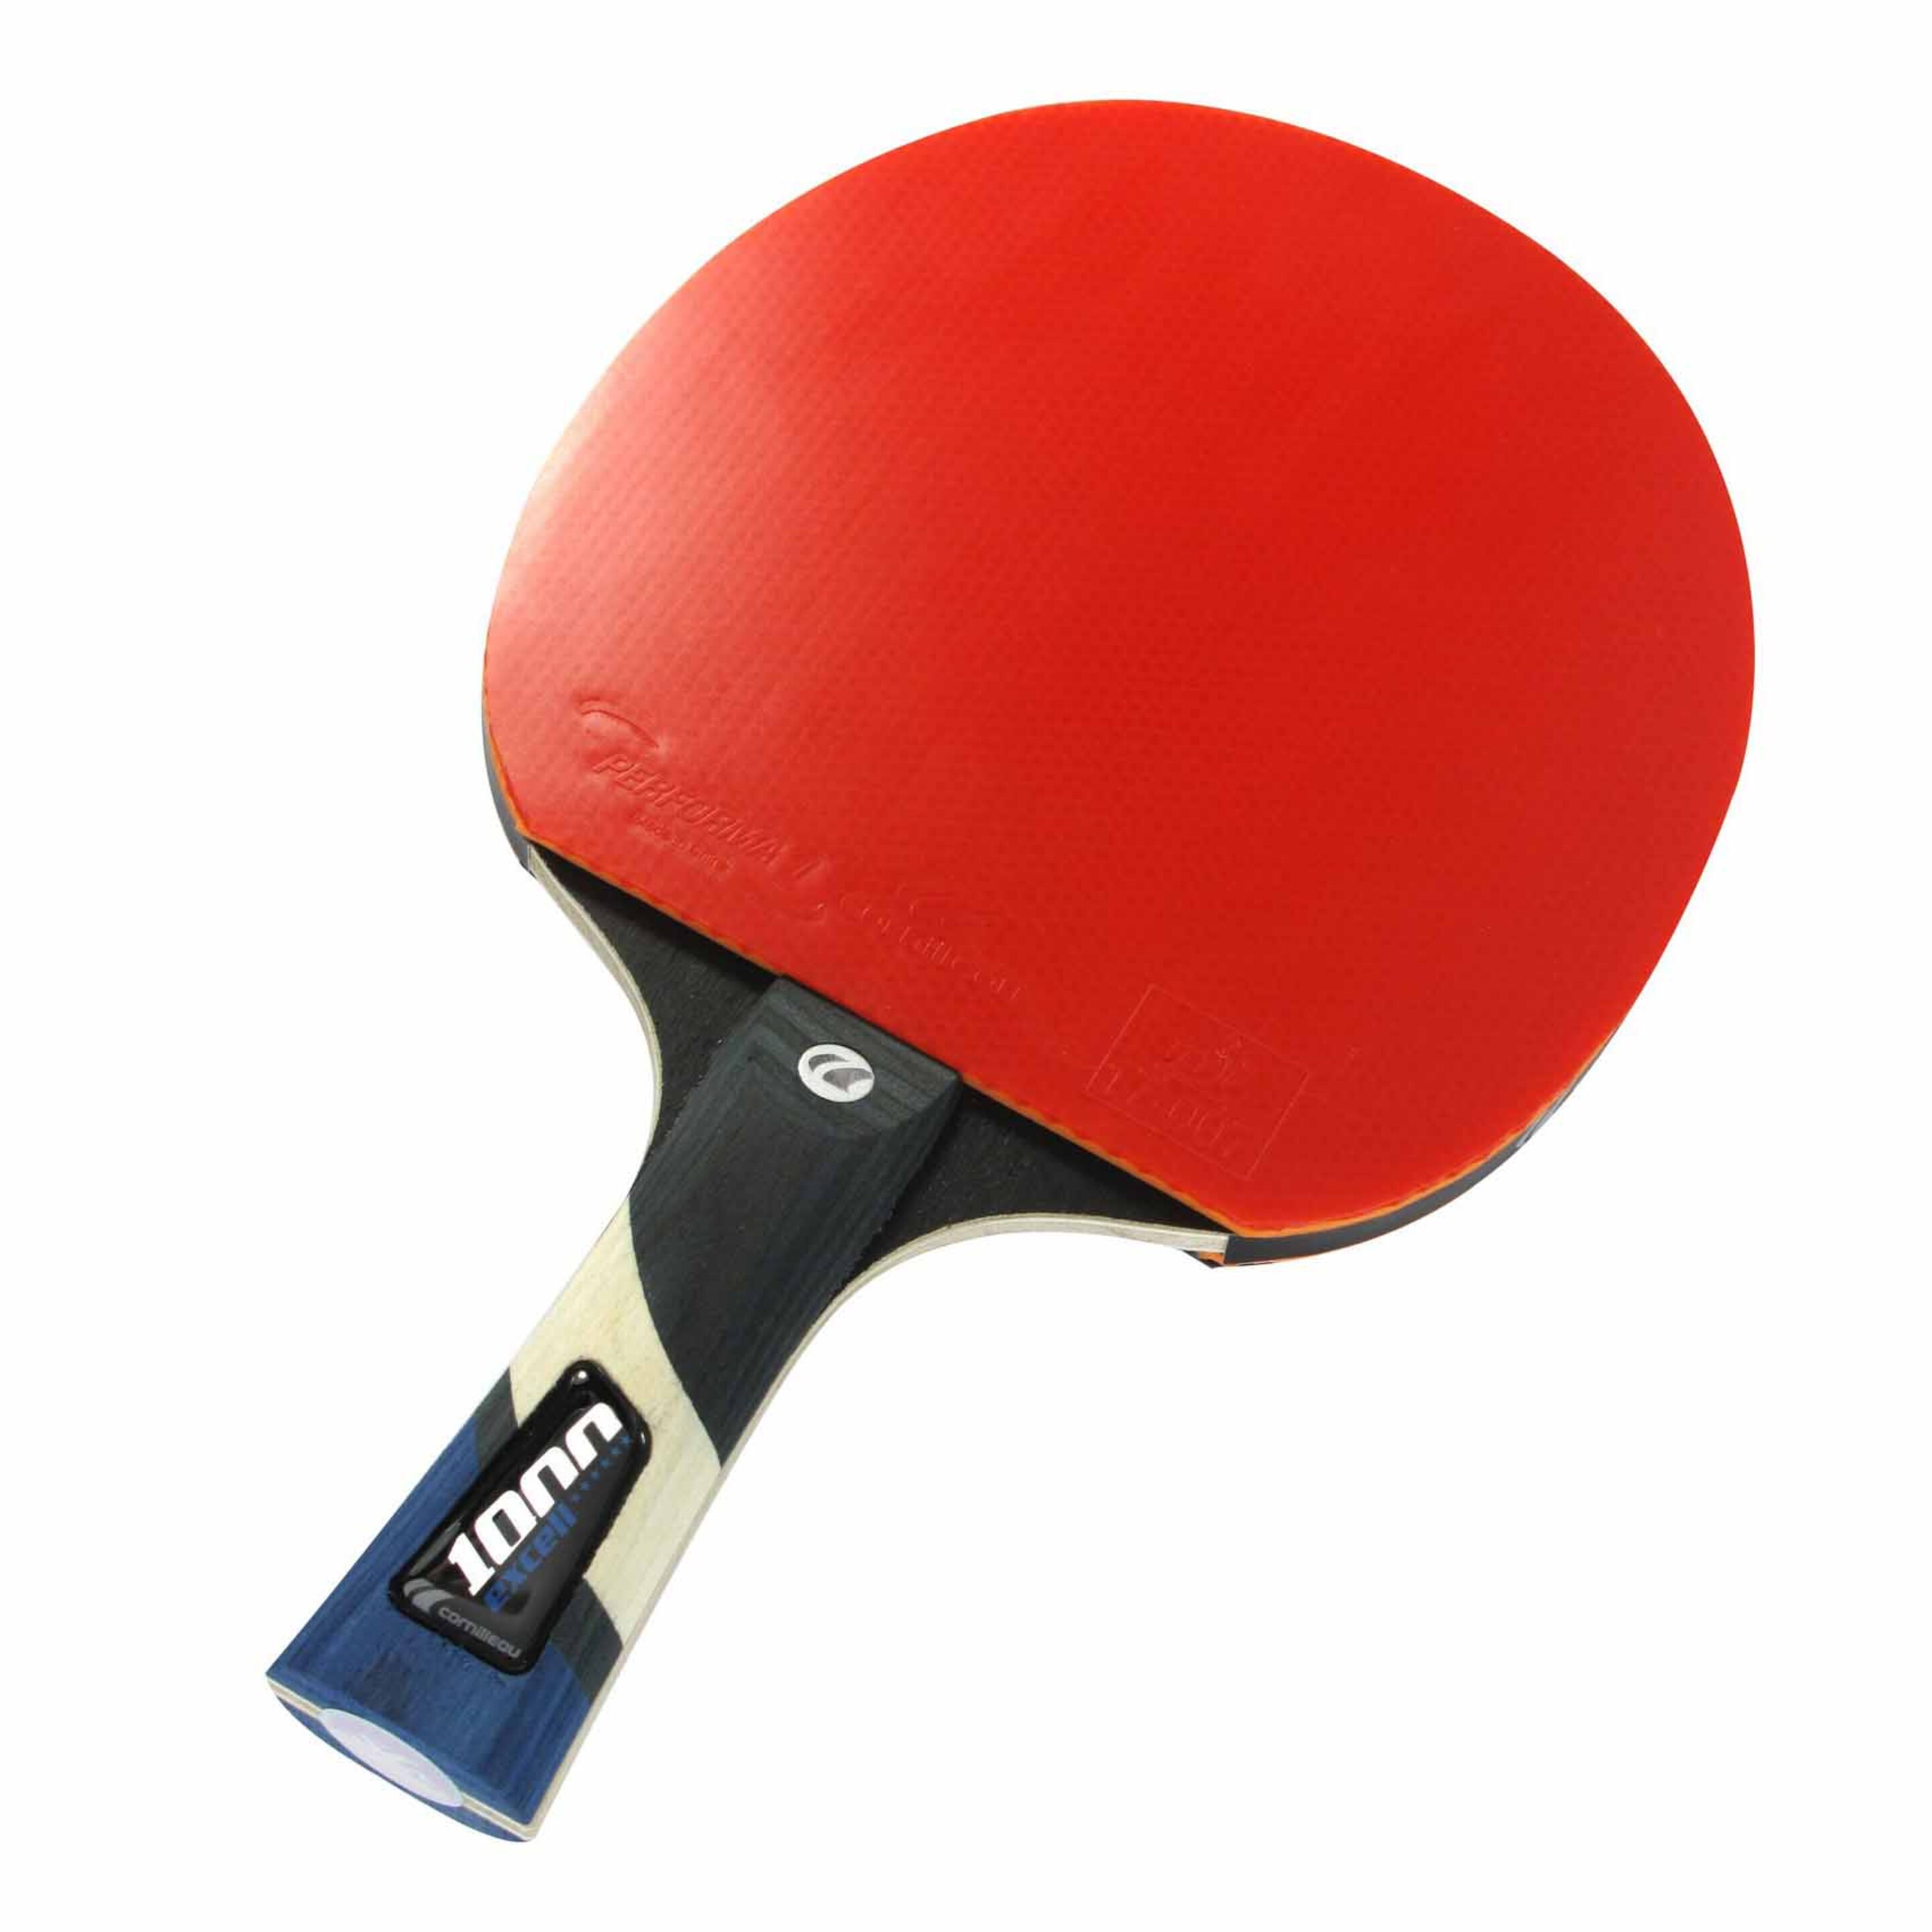 Pala Ping Pong Cornilleau Sport 1000 411500 - Negro - Pala Ping Pong Cornilleau Sport 100  MKP